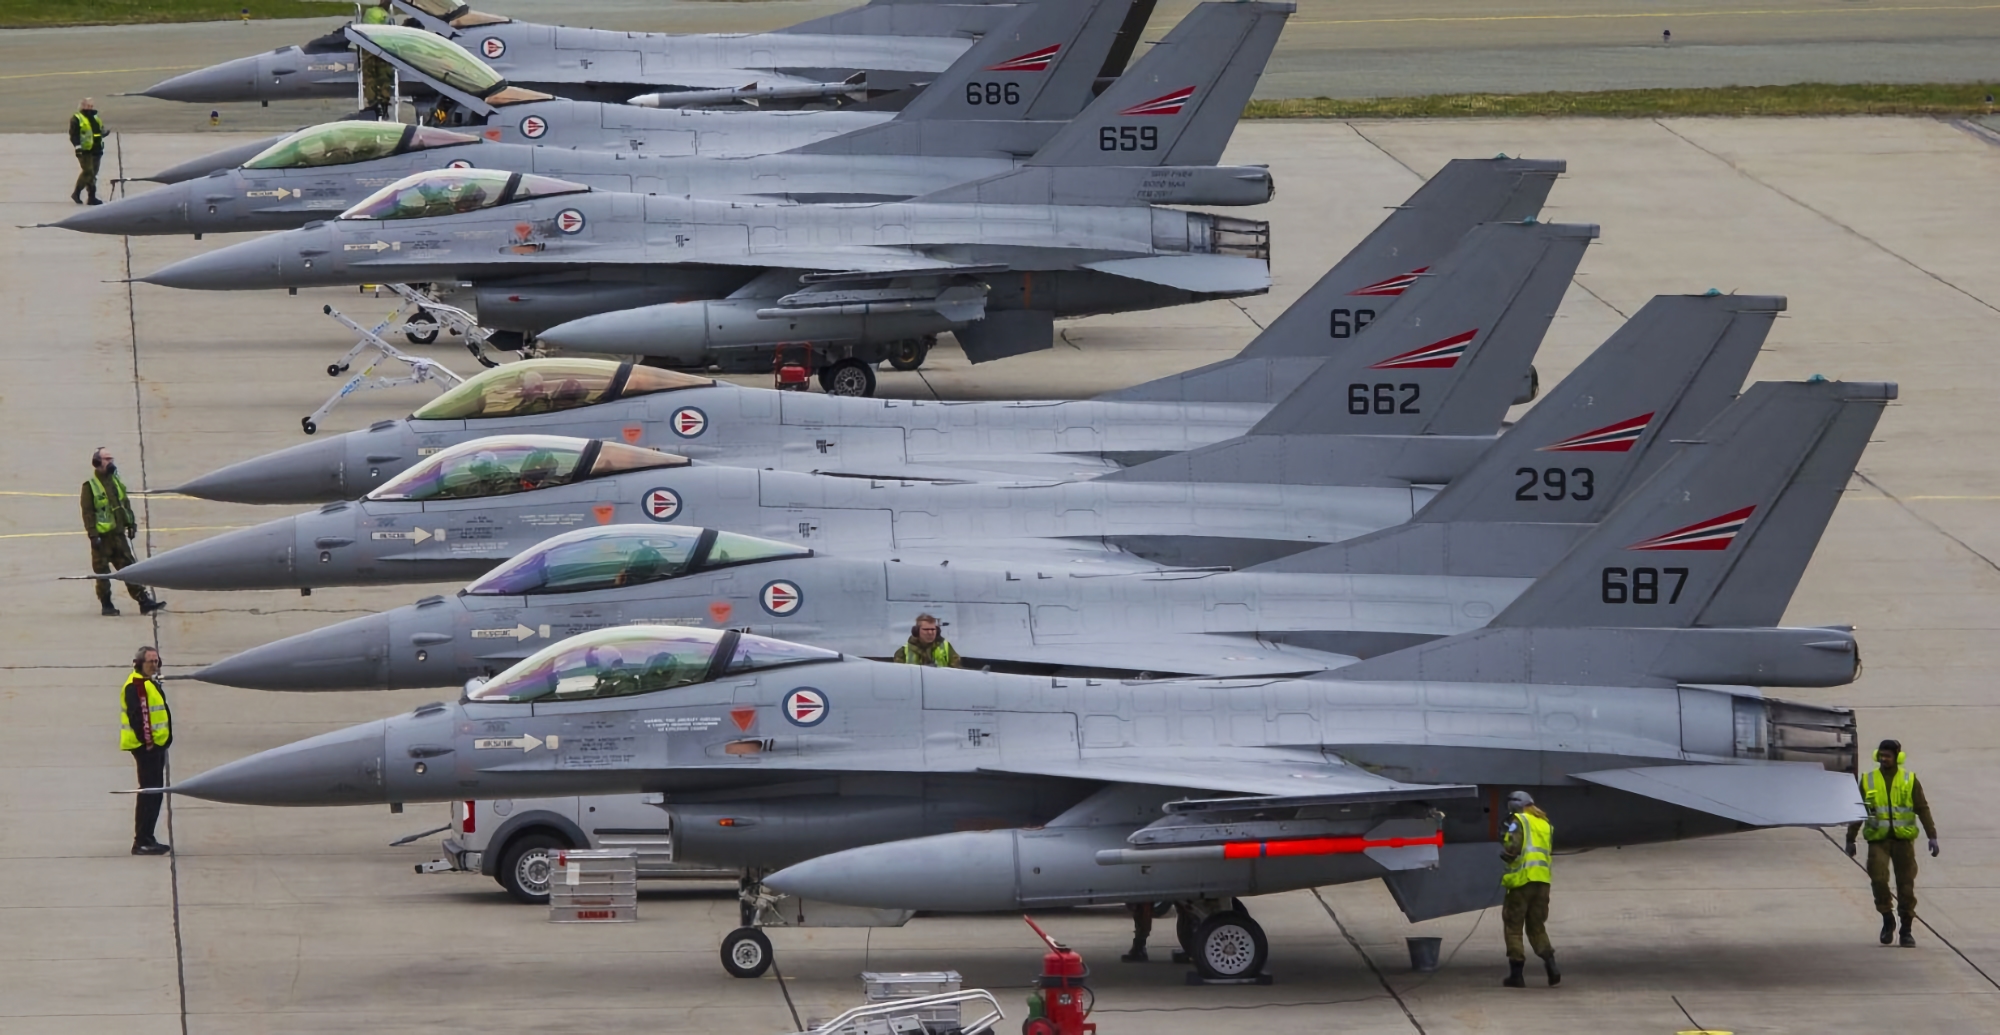 Media: Noorwegen gaat Oekraïne 22 F-16 Fighting Falcon gevechtsvliegtuigen sturen, evenals motoren en simulators voor hen